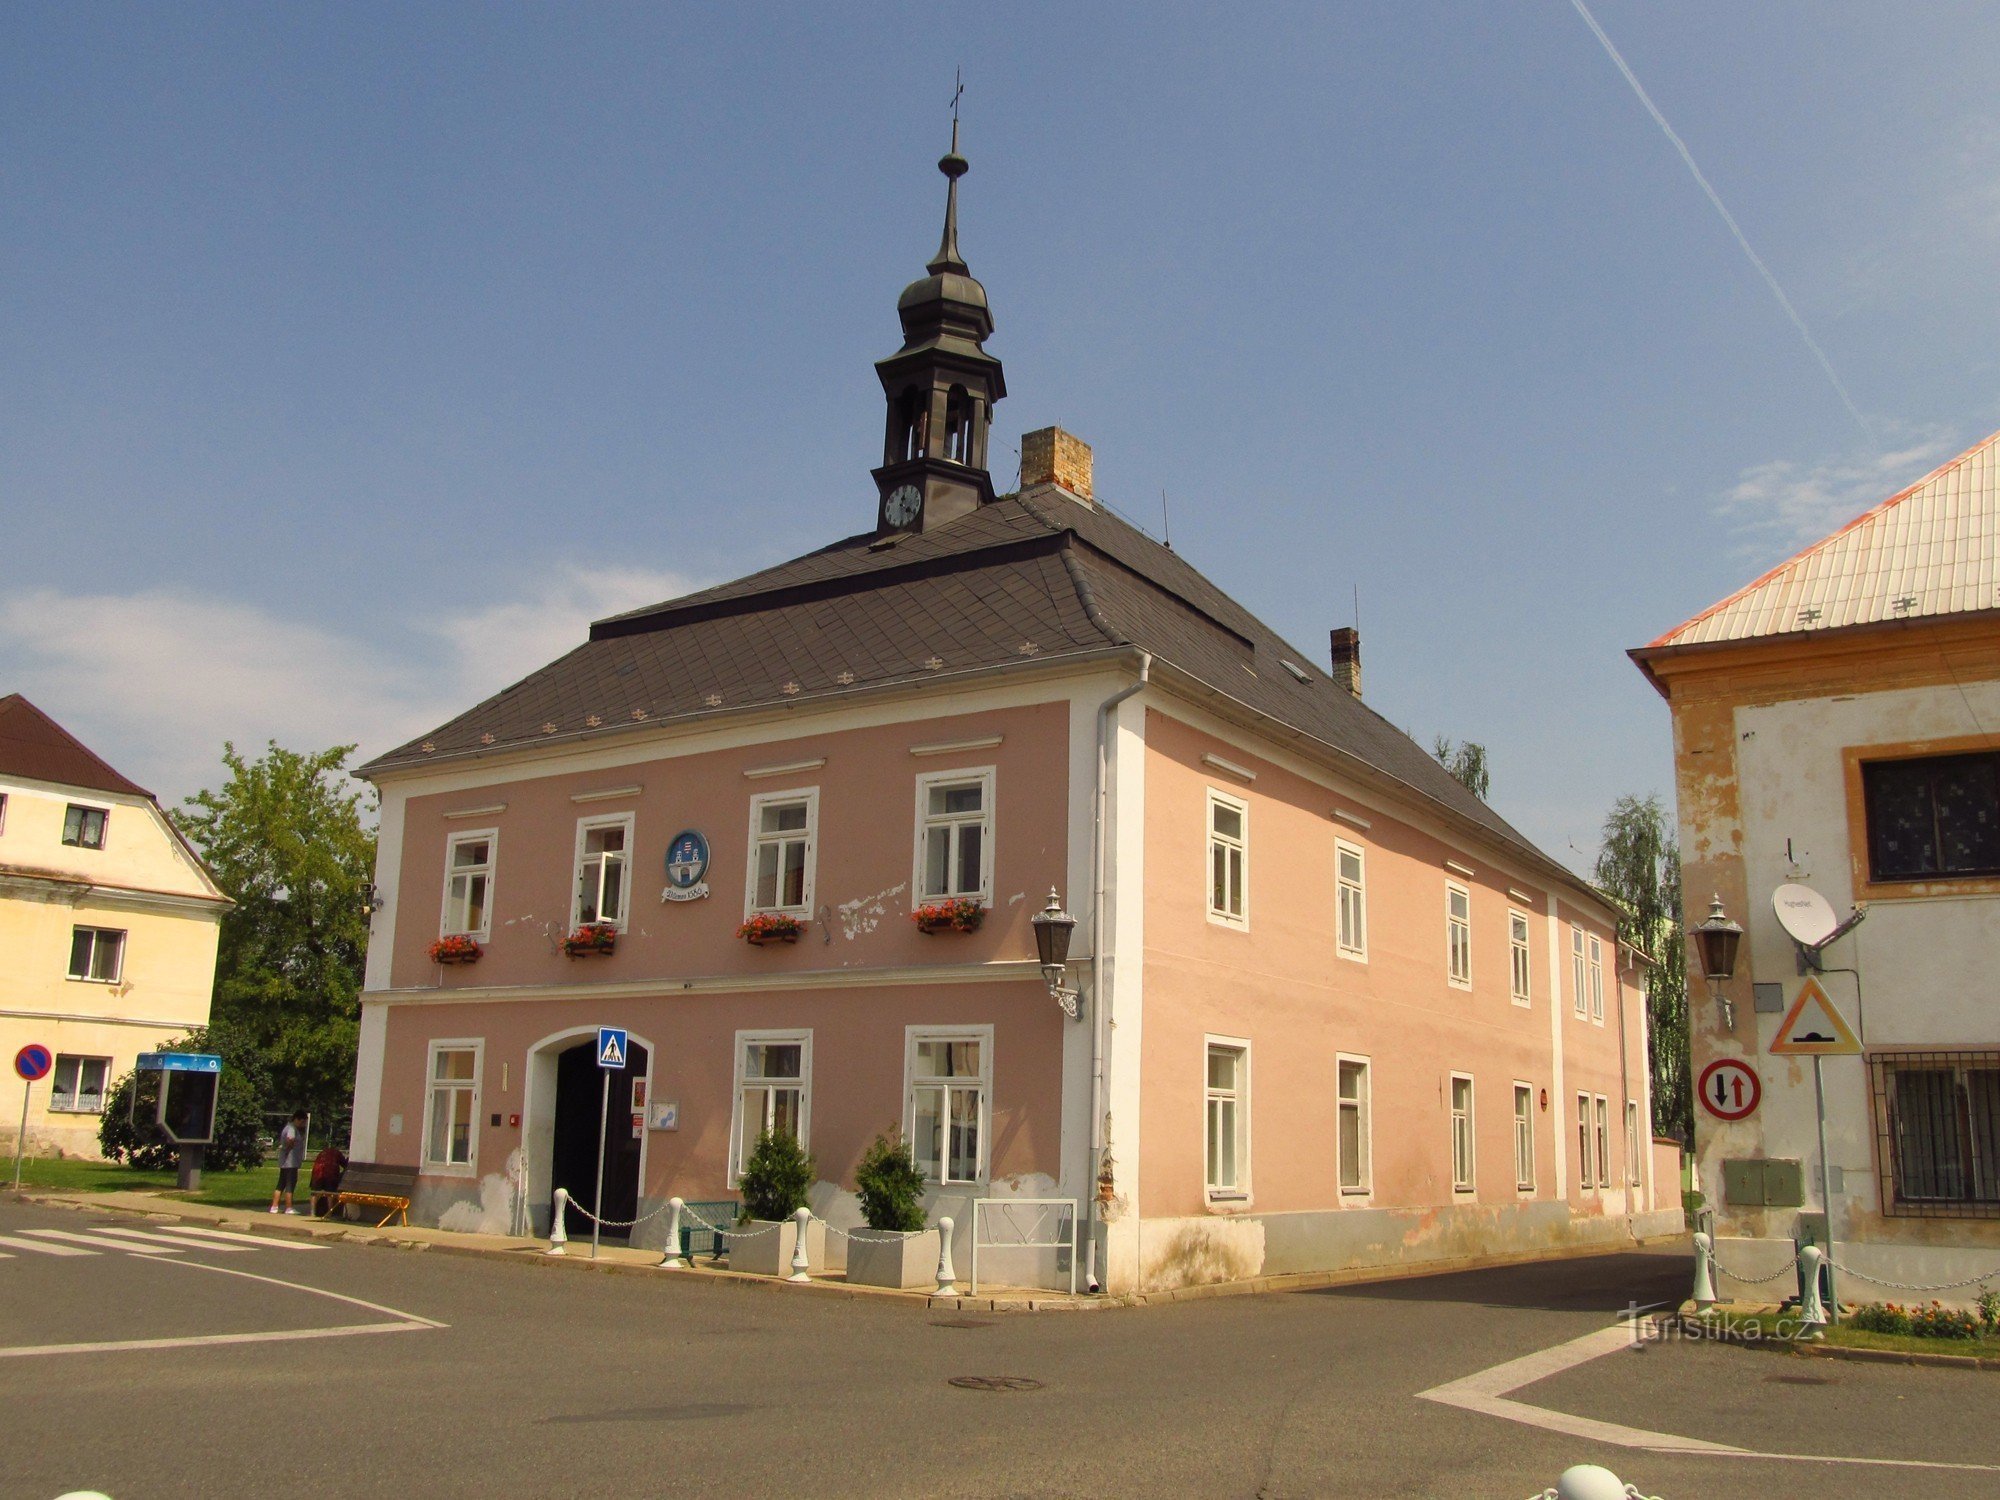 18 世紀末のヴィレモフ市庁舎。正面に塔と紋章が飾られている